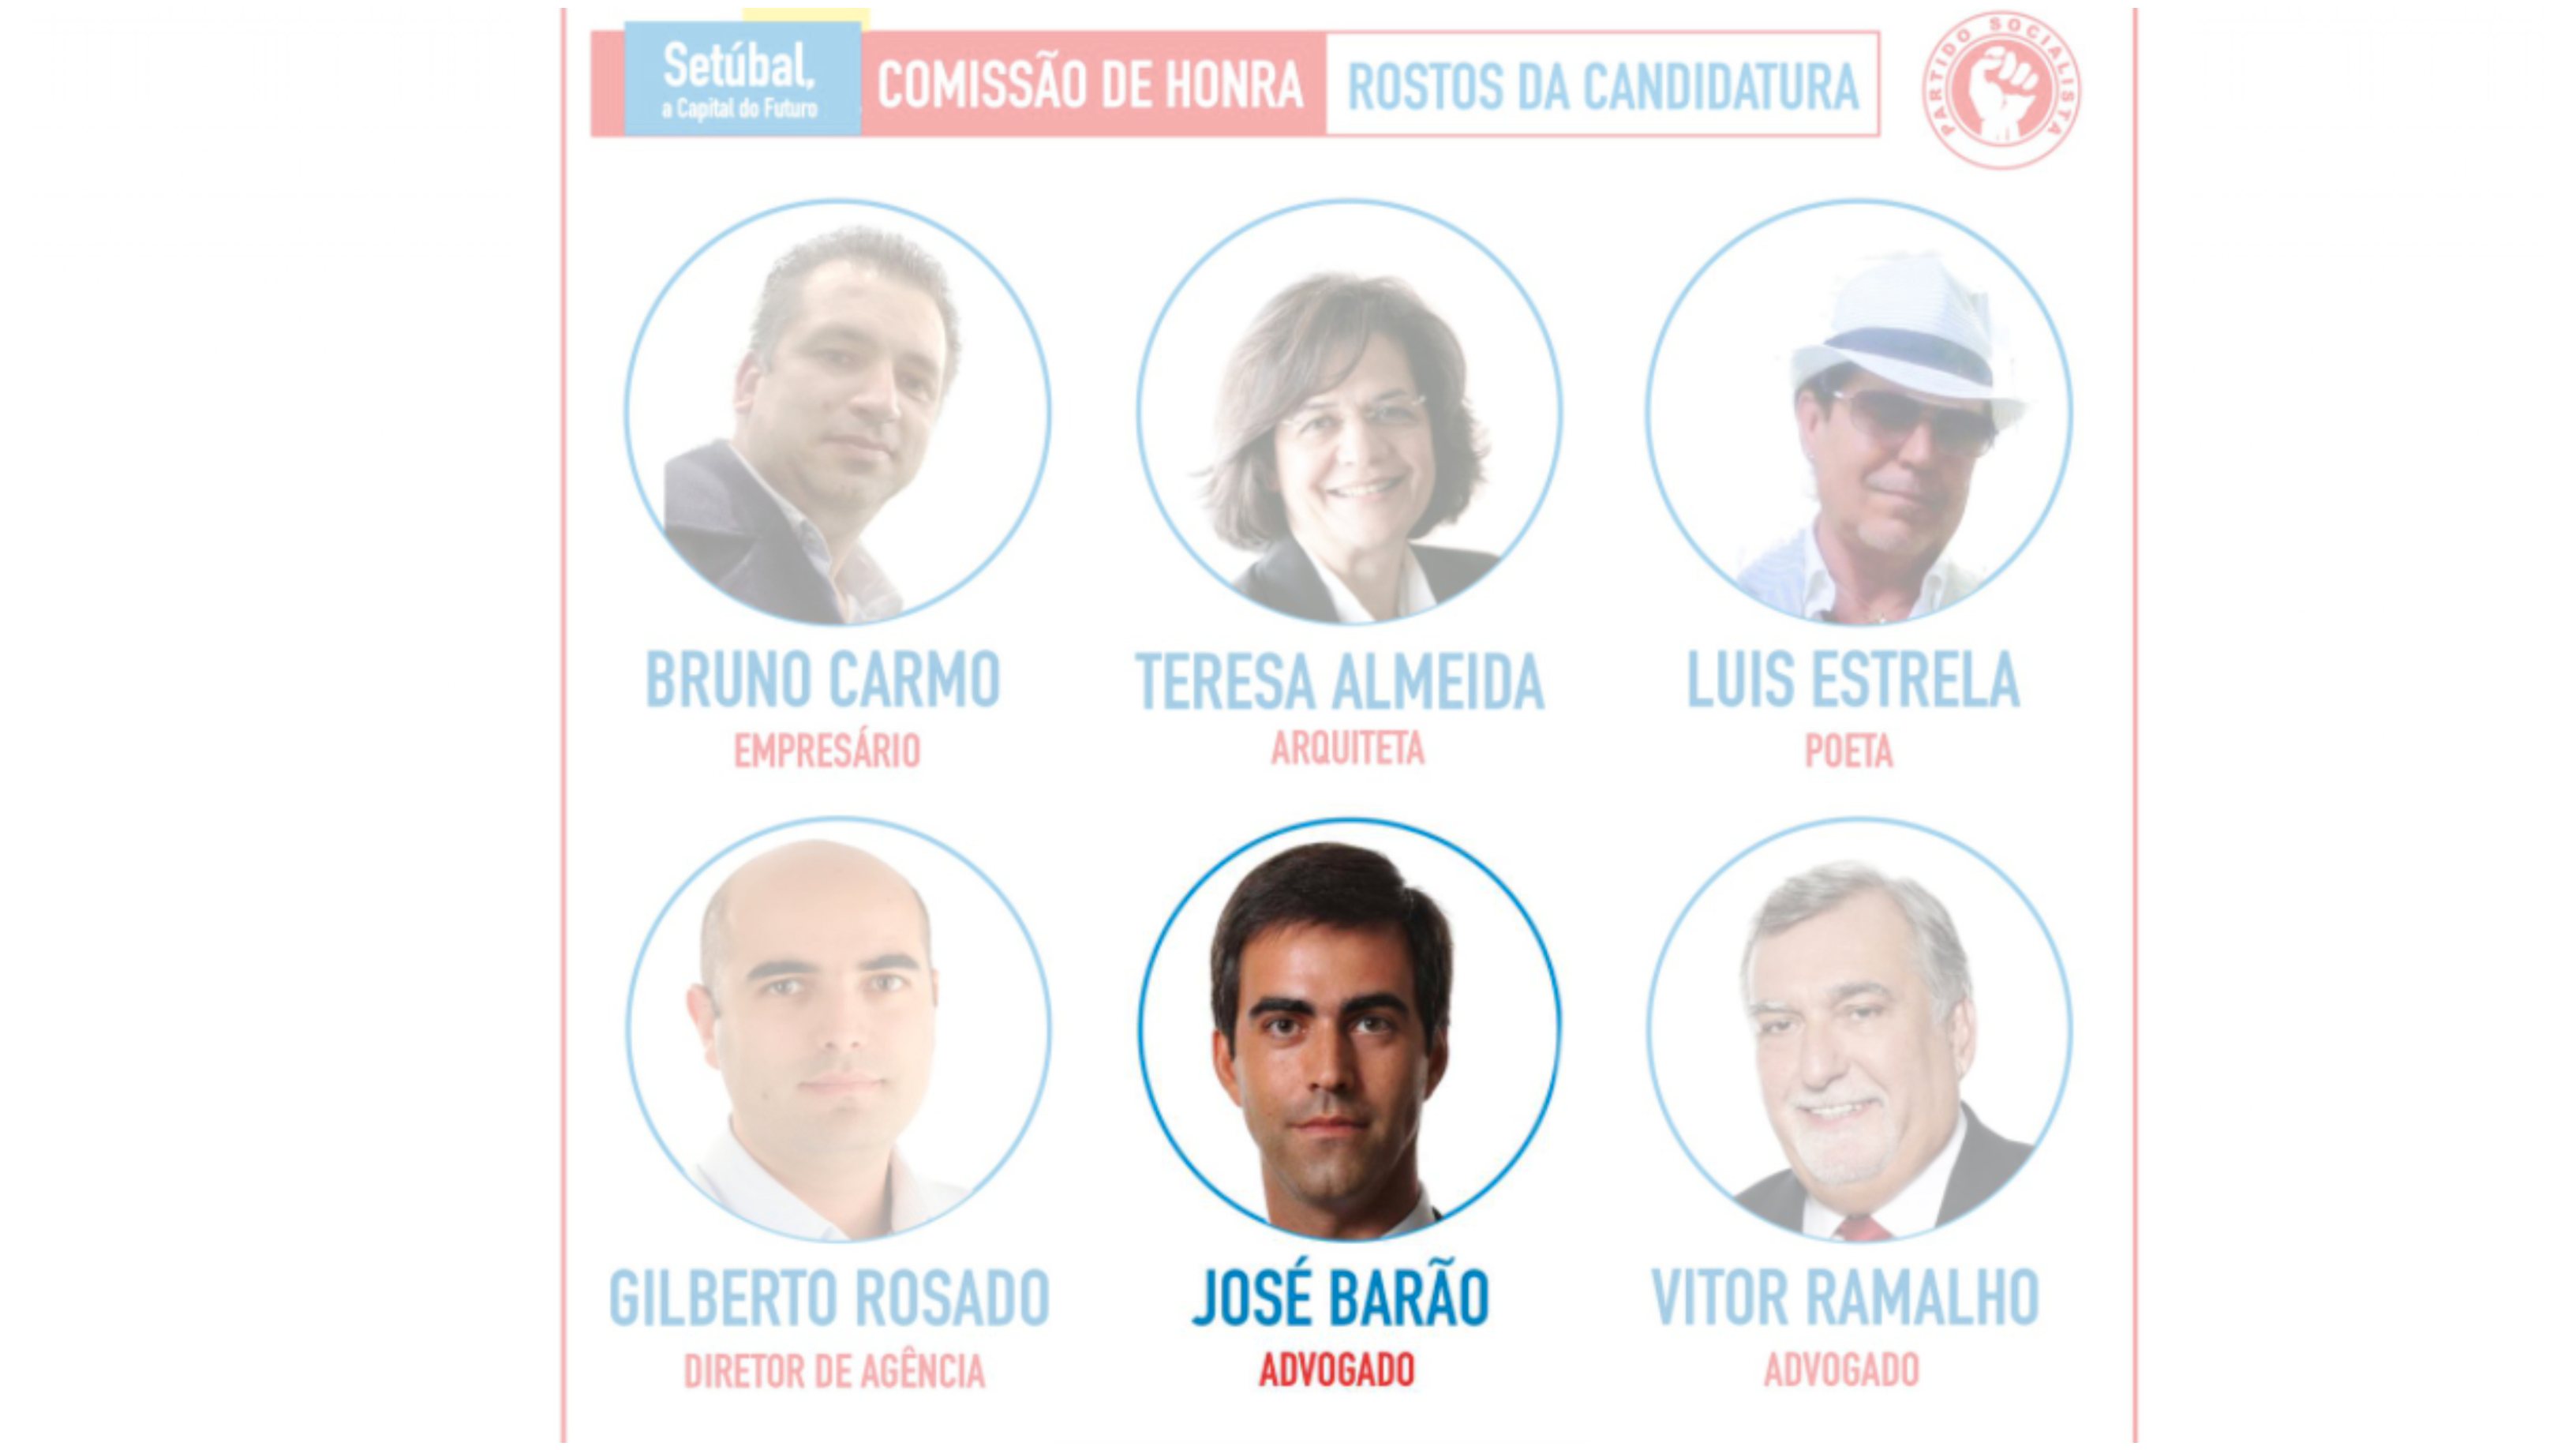 José Barão (na segunda fila, no meio) identifica-se como advogado na comissão de honra do candidato do PS